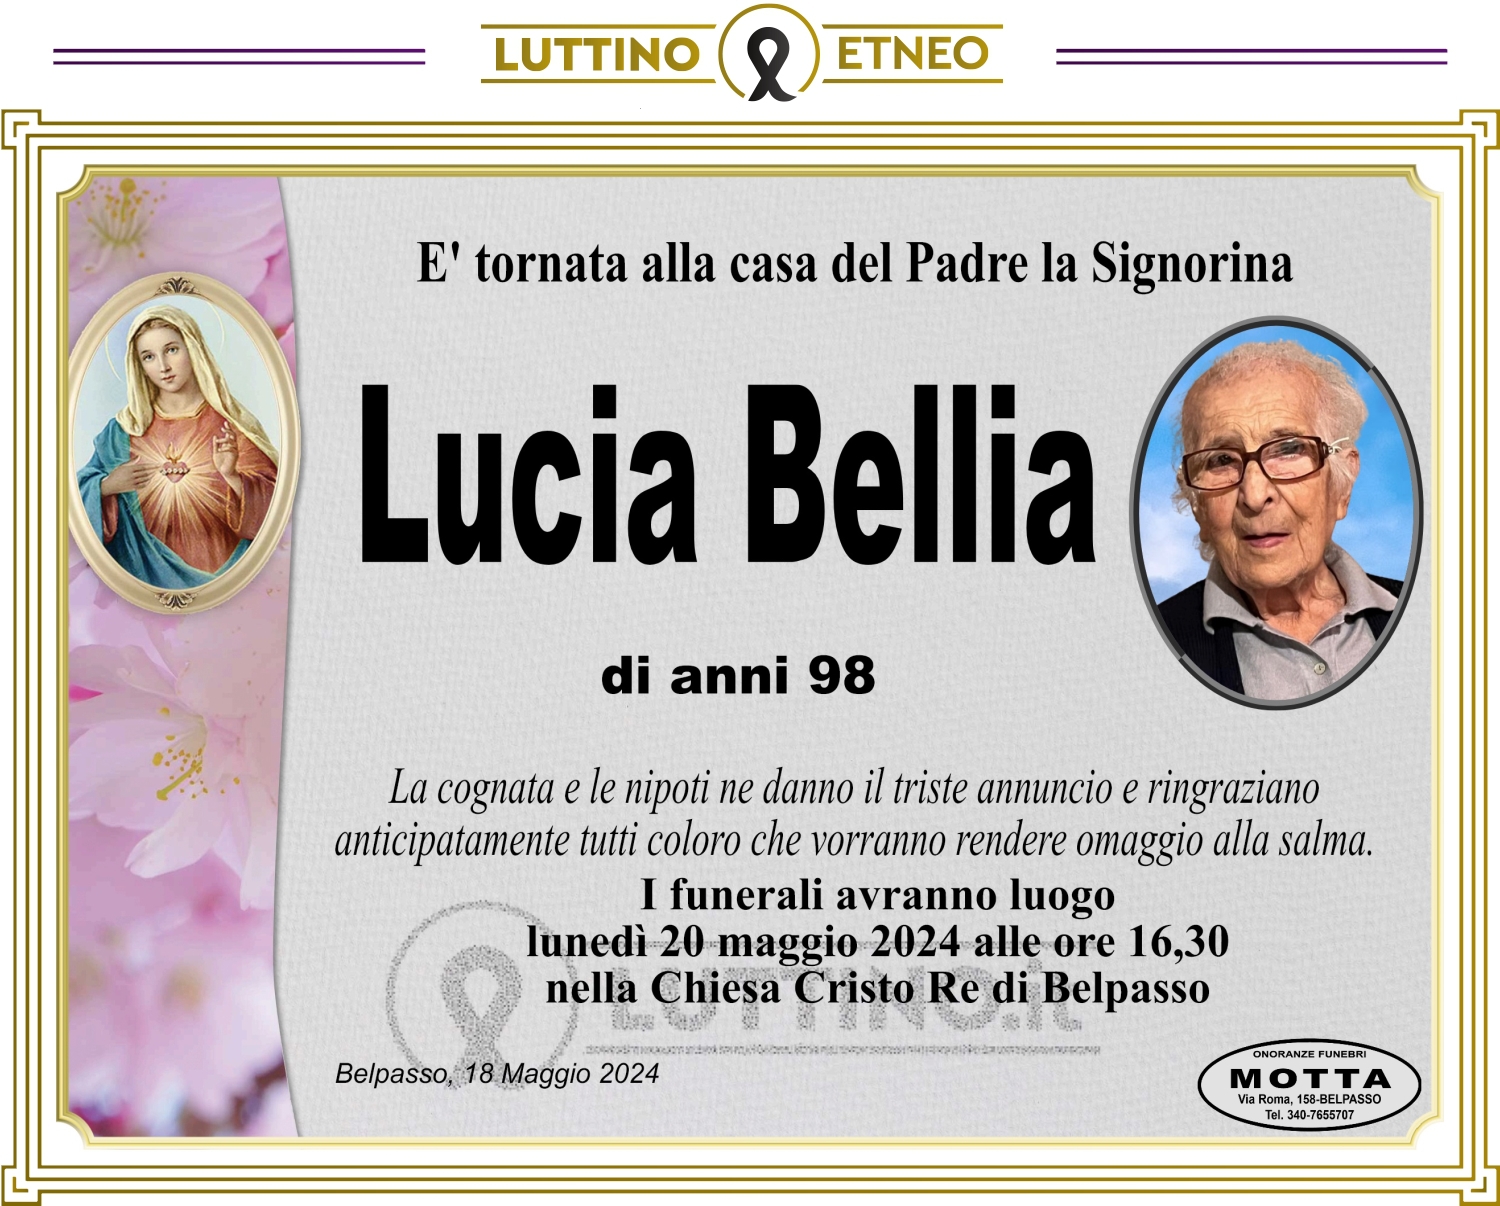 Lucia Bellia